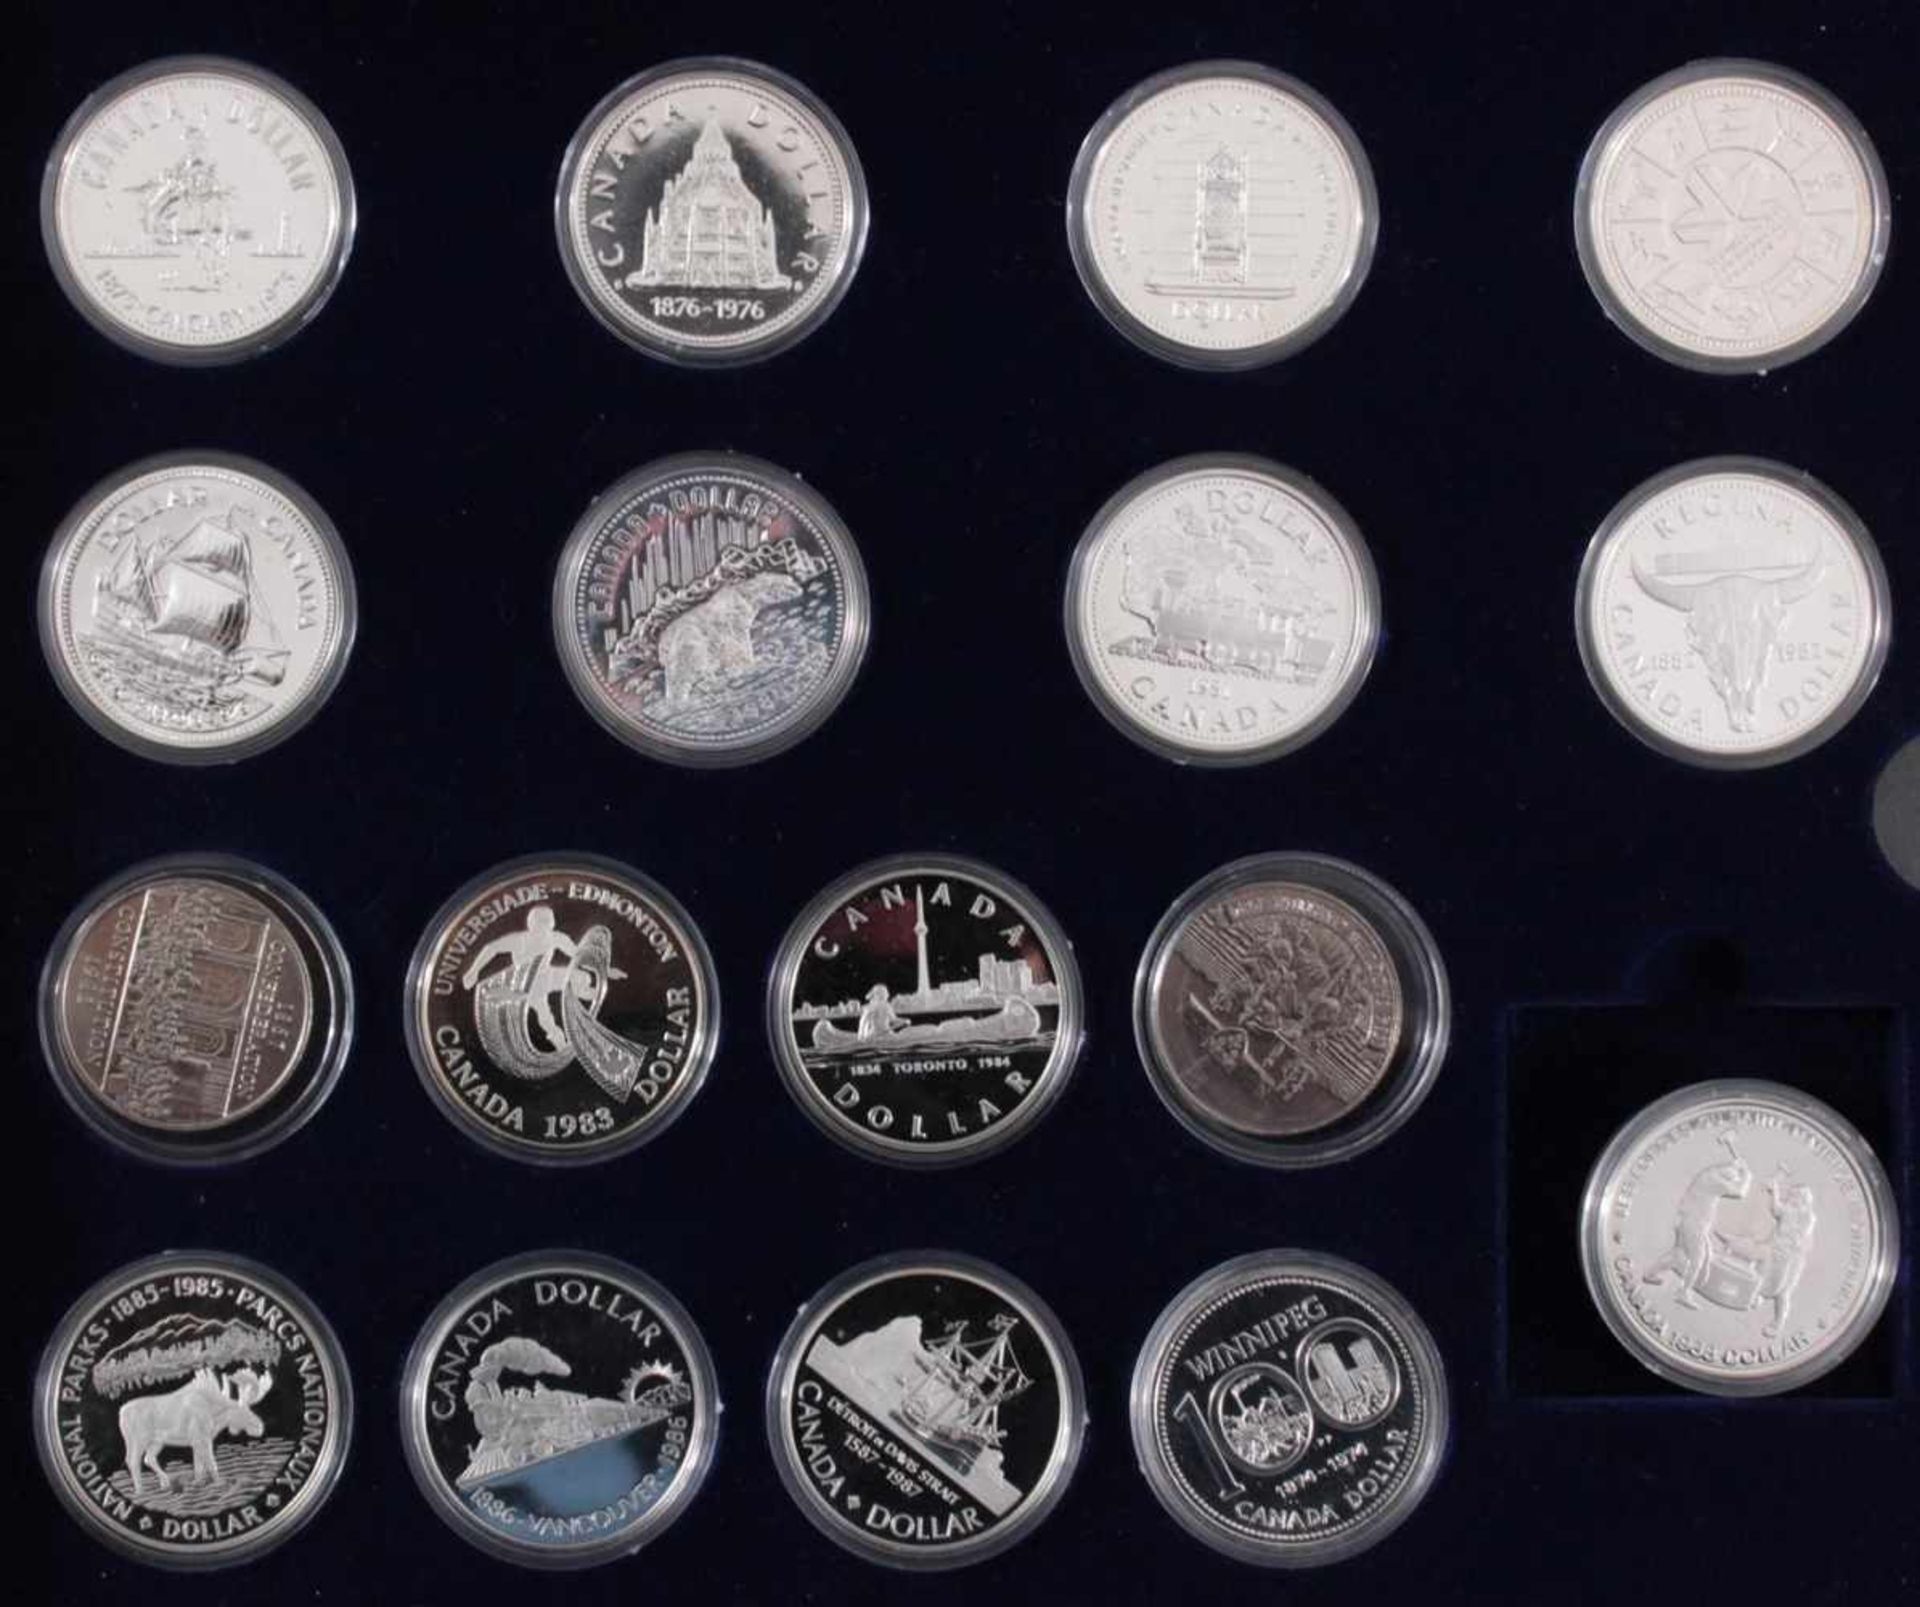 Kanada - Die Offiziellen Silber-Gedenkmünzen33 Stück, alle Polierte Platte und in Münzkapseln - Bild 3 aus 5